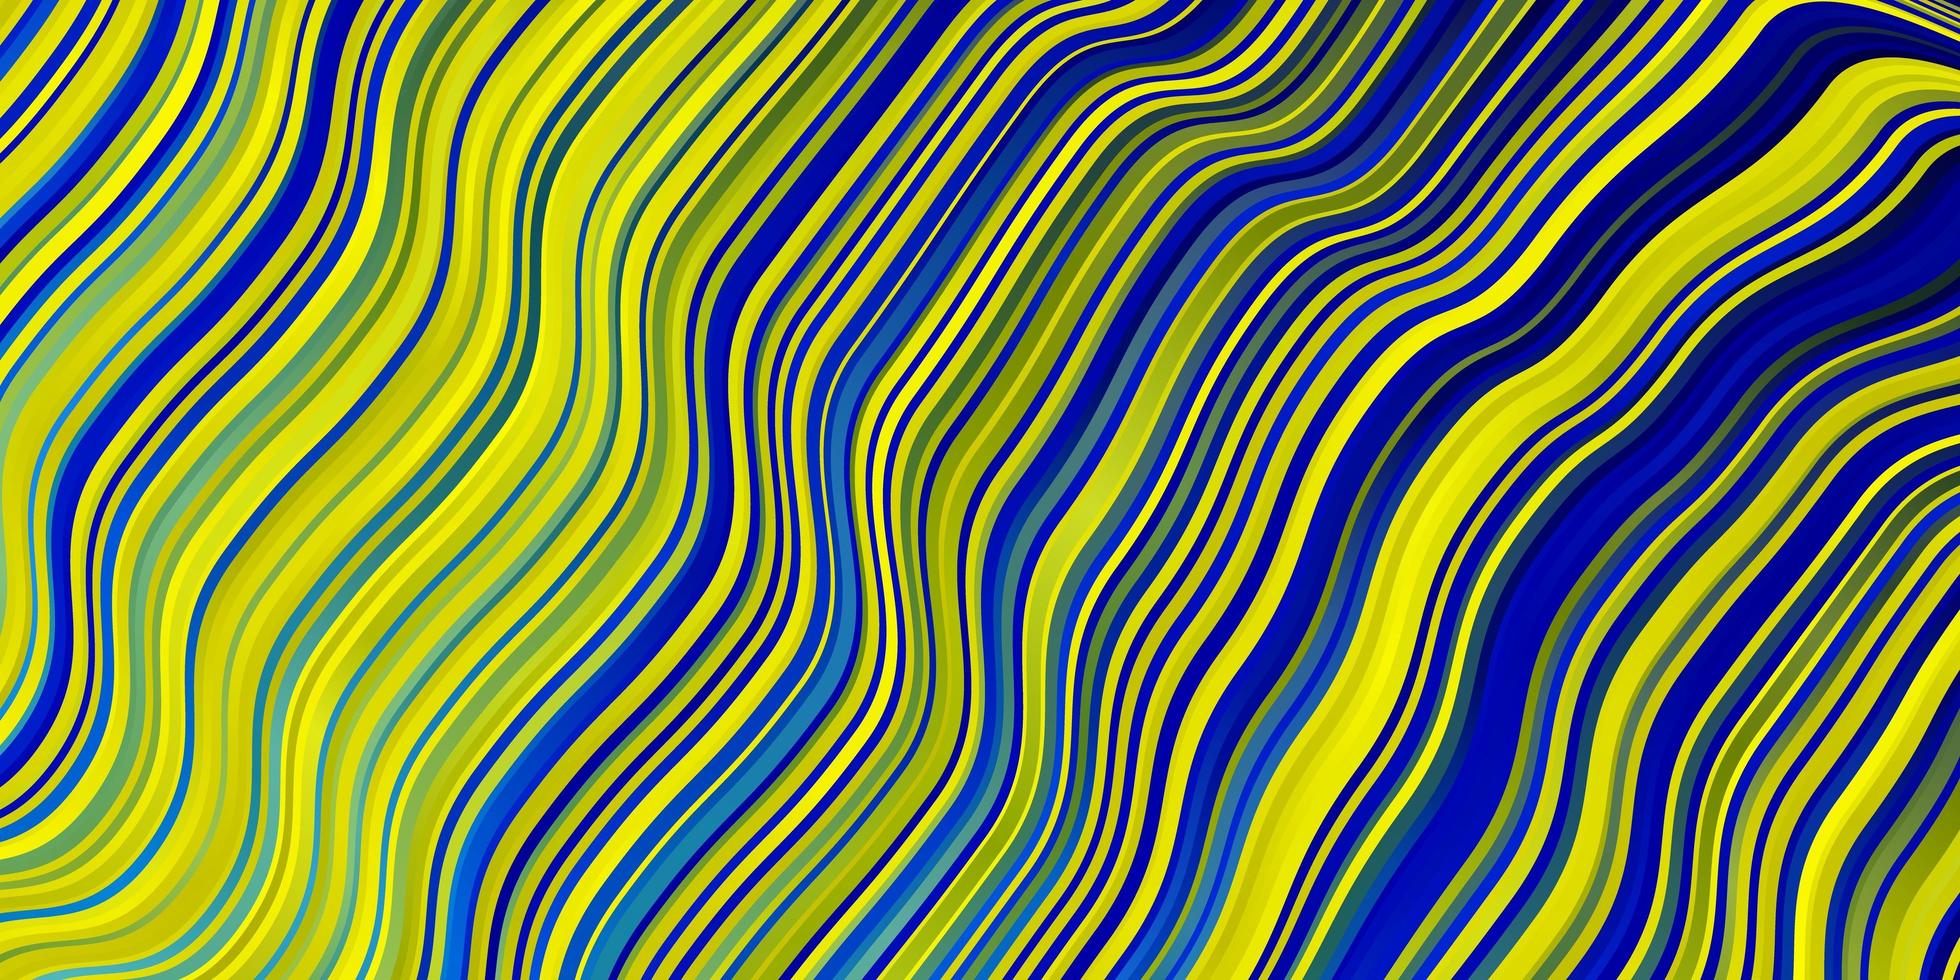 hellblauer, gelber Vektorhintergrund mit Linien. vektor